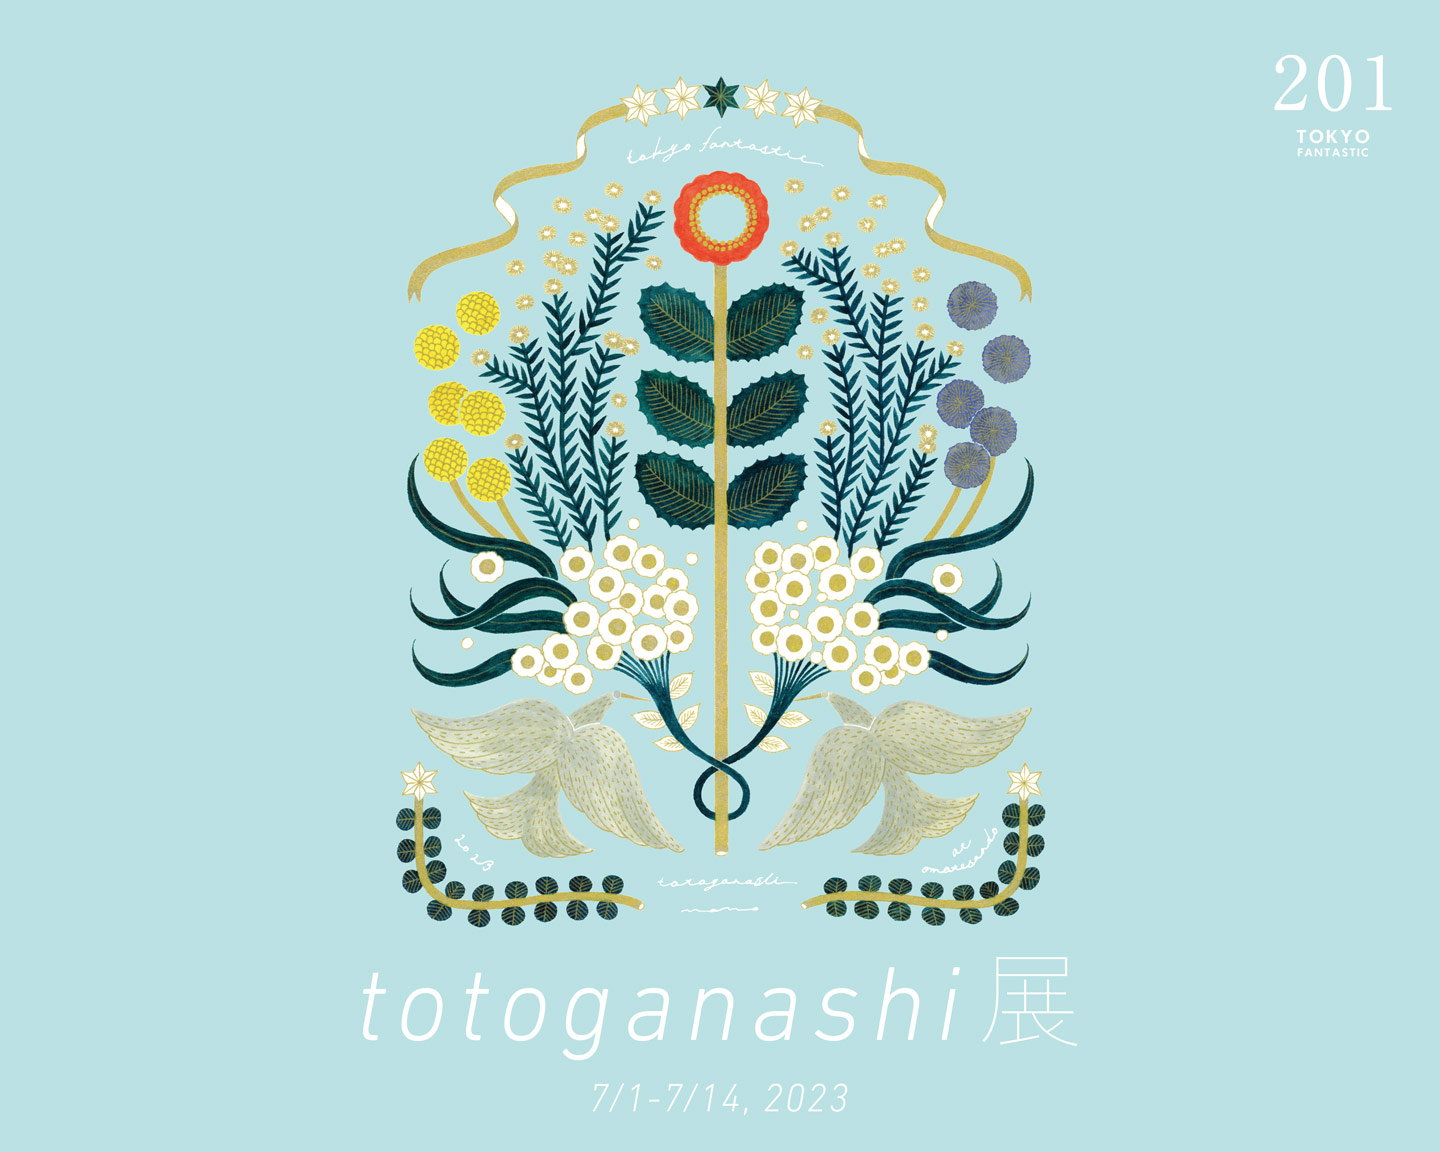 やさしい、お花のイラスト作家。totoganashi 展 7/1-7/14, 2023【TOKYO FANTASTIC 201】